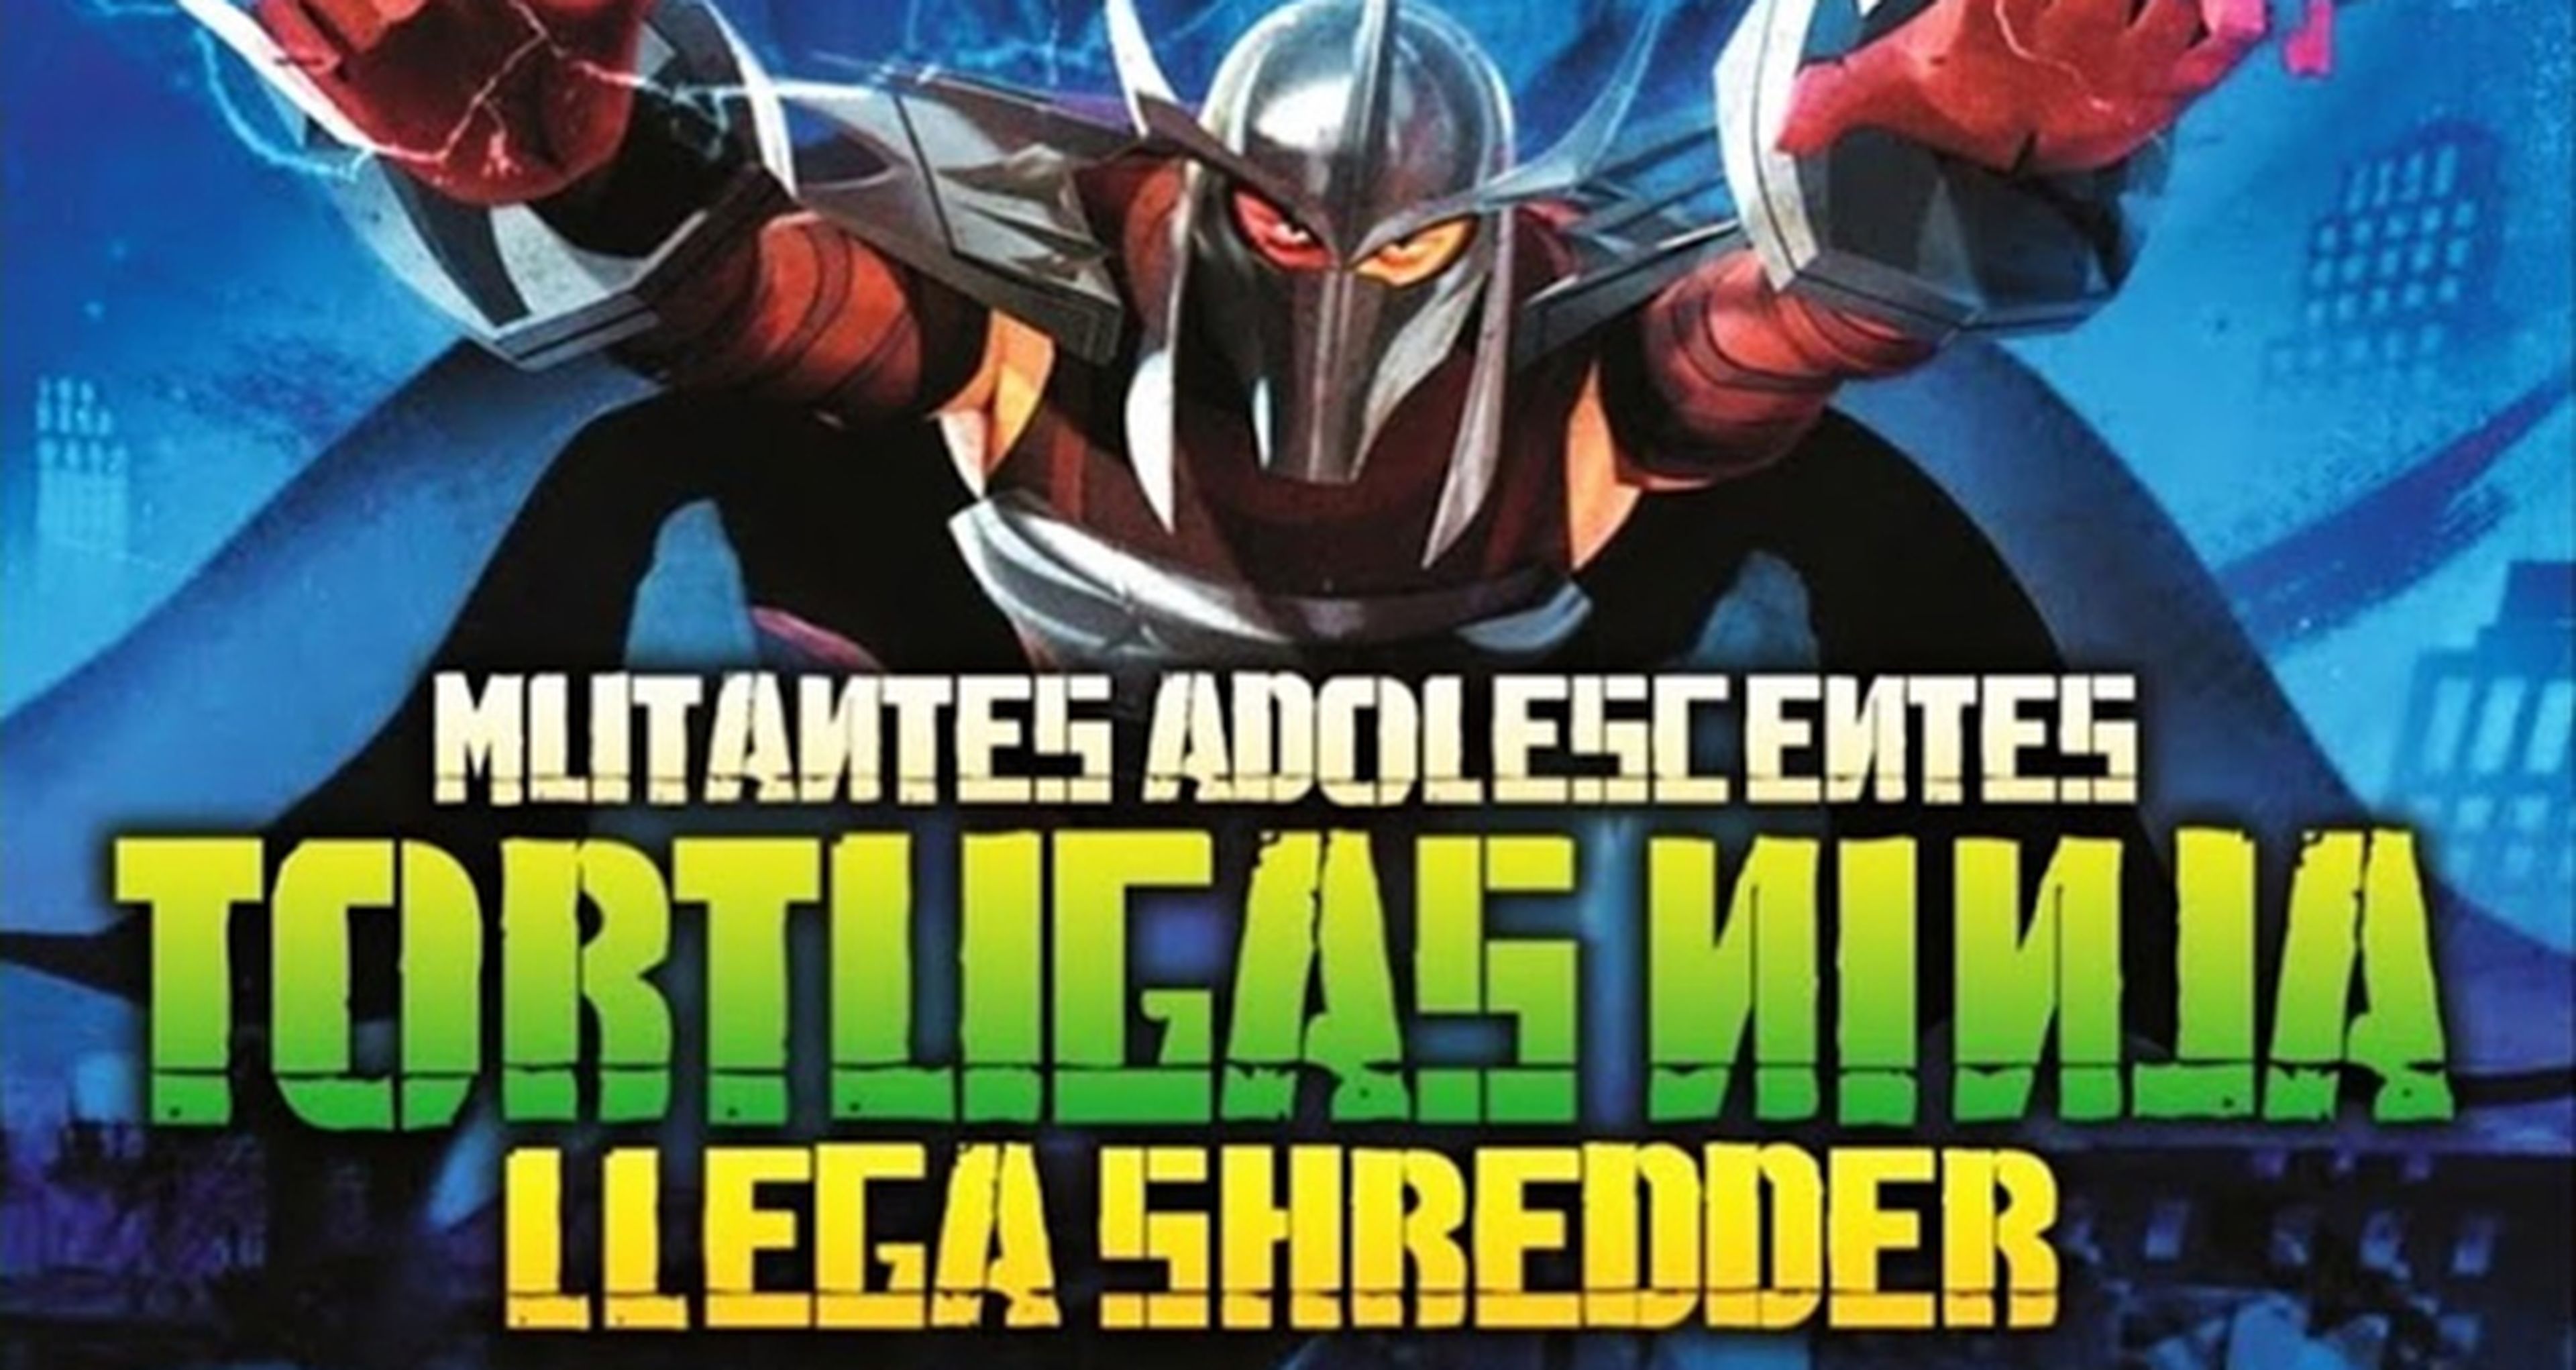 Vídeo en exclusiva de Tortugas Ninja: llega Shredder